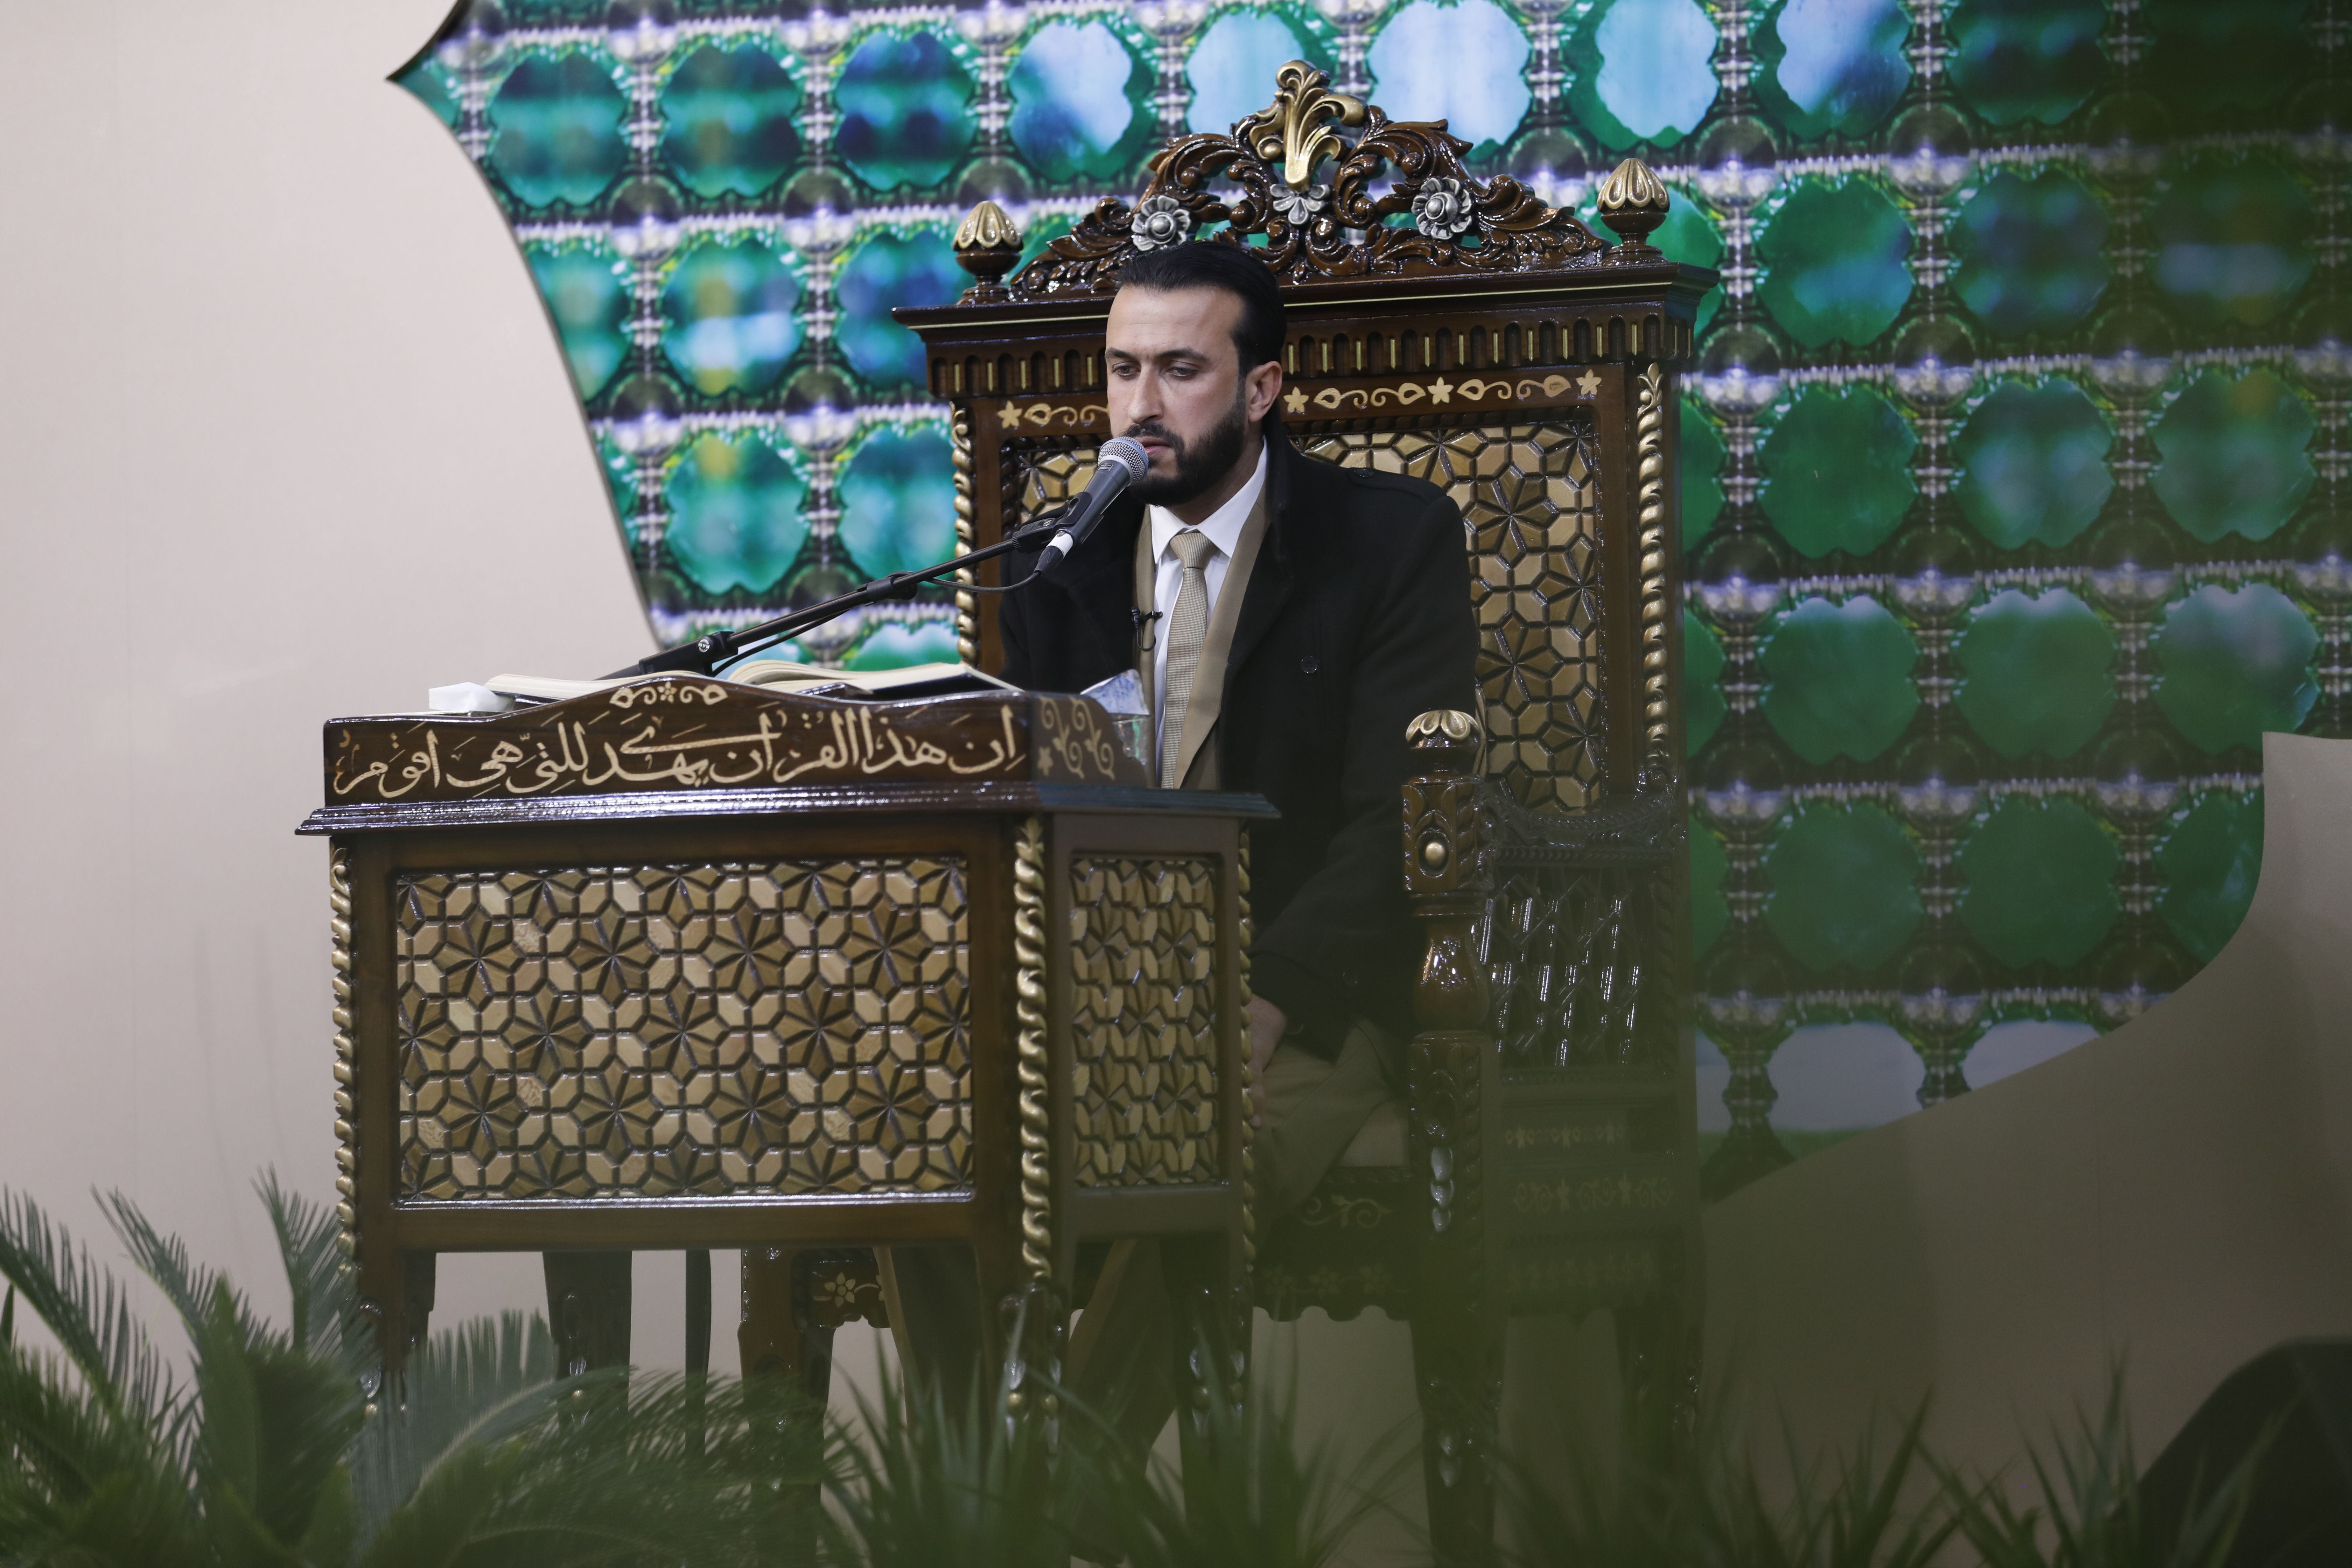 قارئ العتبتين المقدستين السيّد حيدر جلوخان الموسوي يشارك في فعاليات مهرجان خاتم الأوصياء الدولي السنوي الأول